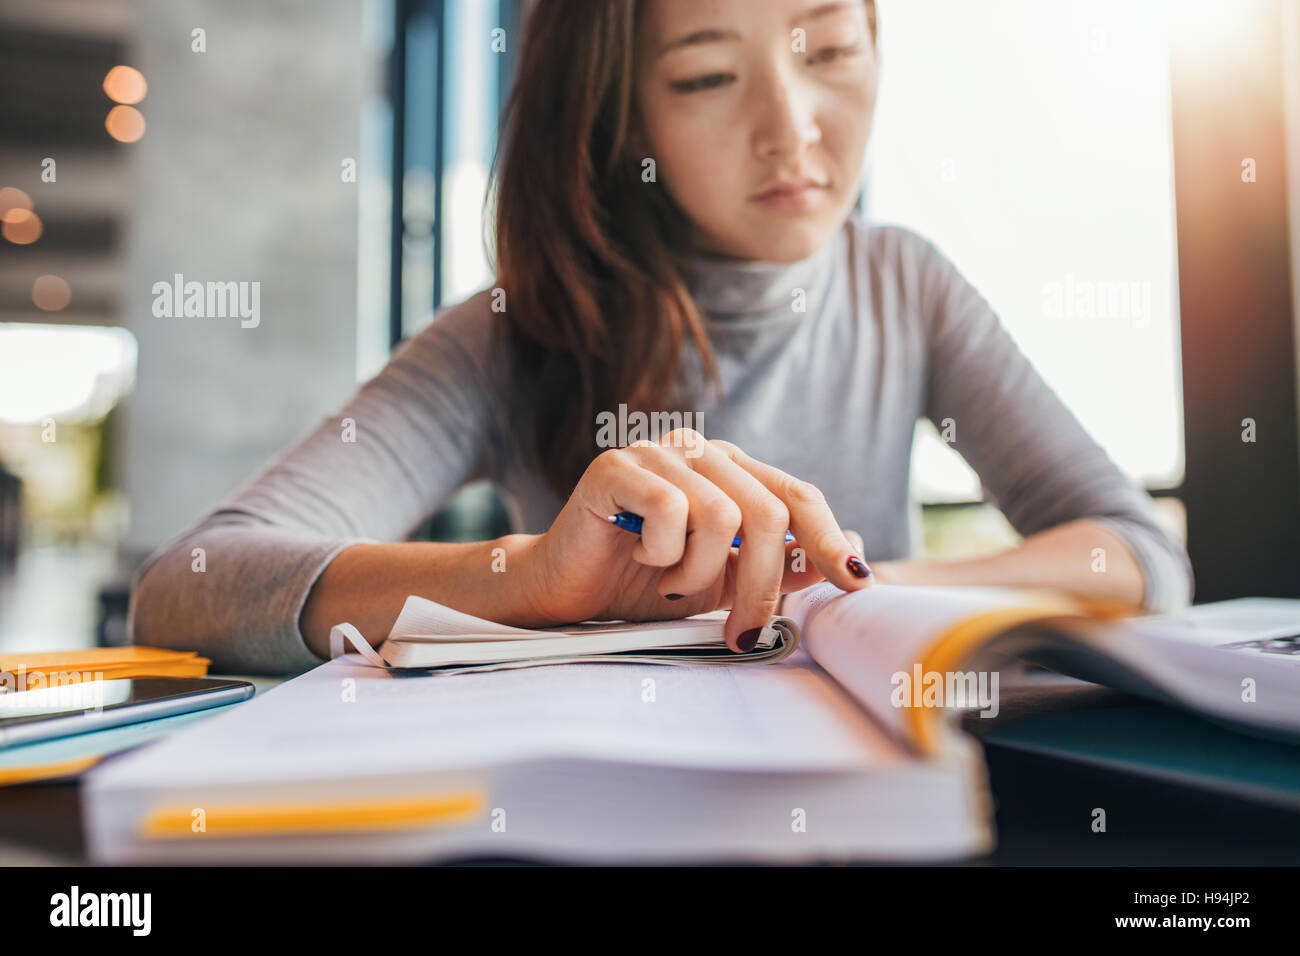 Close up image d'une jeune étudiante faisant des affectations dans la bibliothèque. Femme Asiatique la prise de notes à partir de manuels scolaires. Banque D'Images